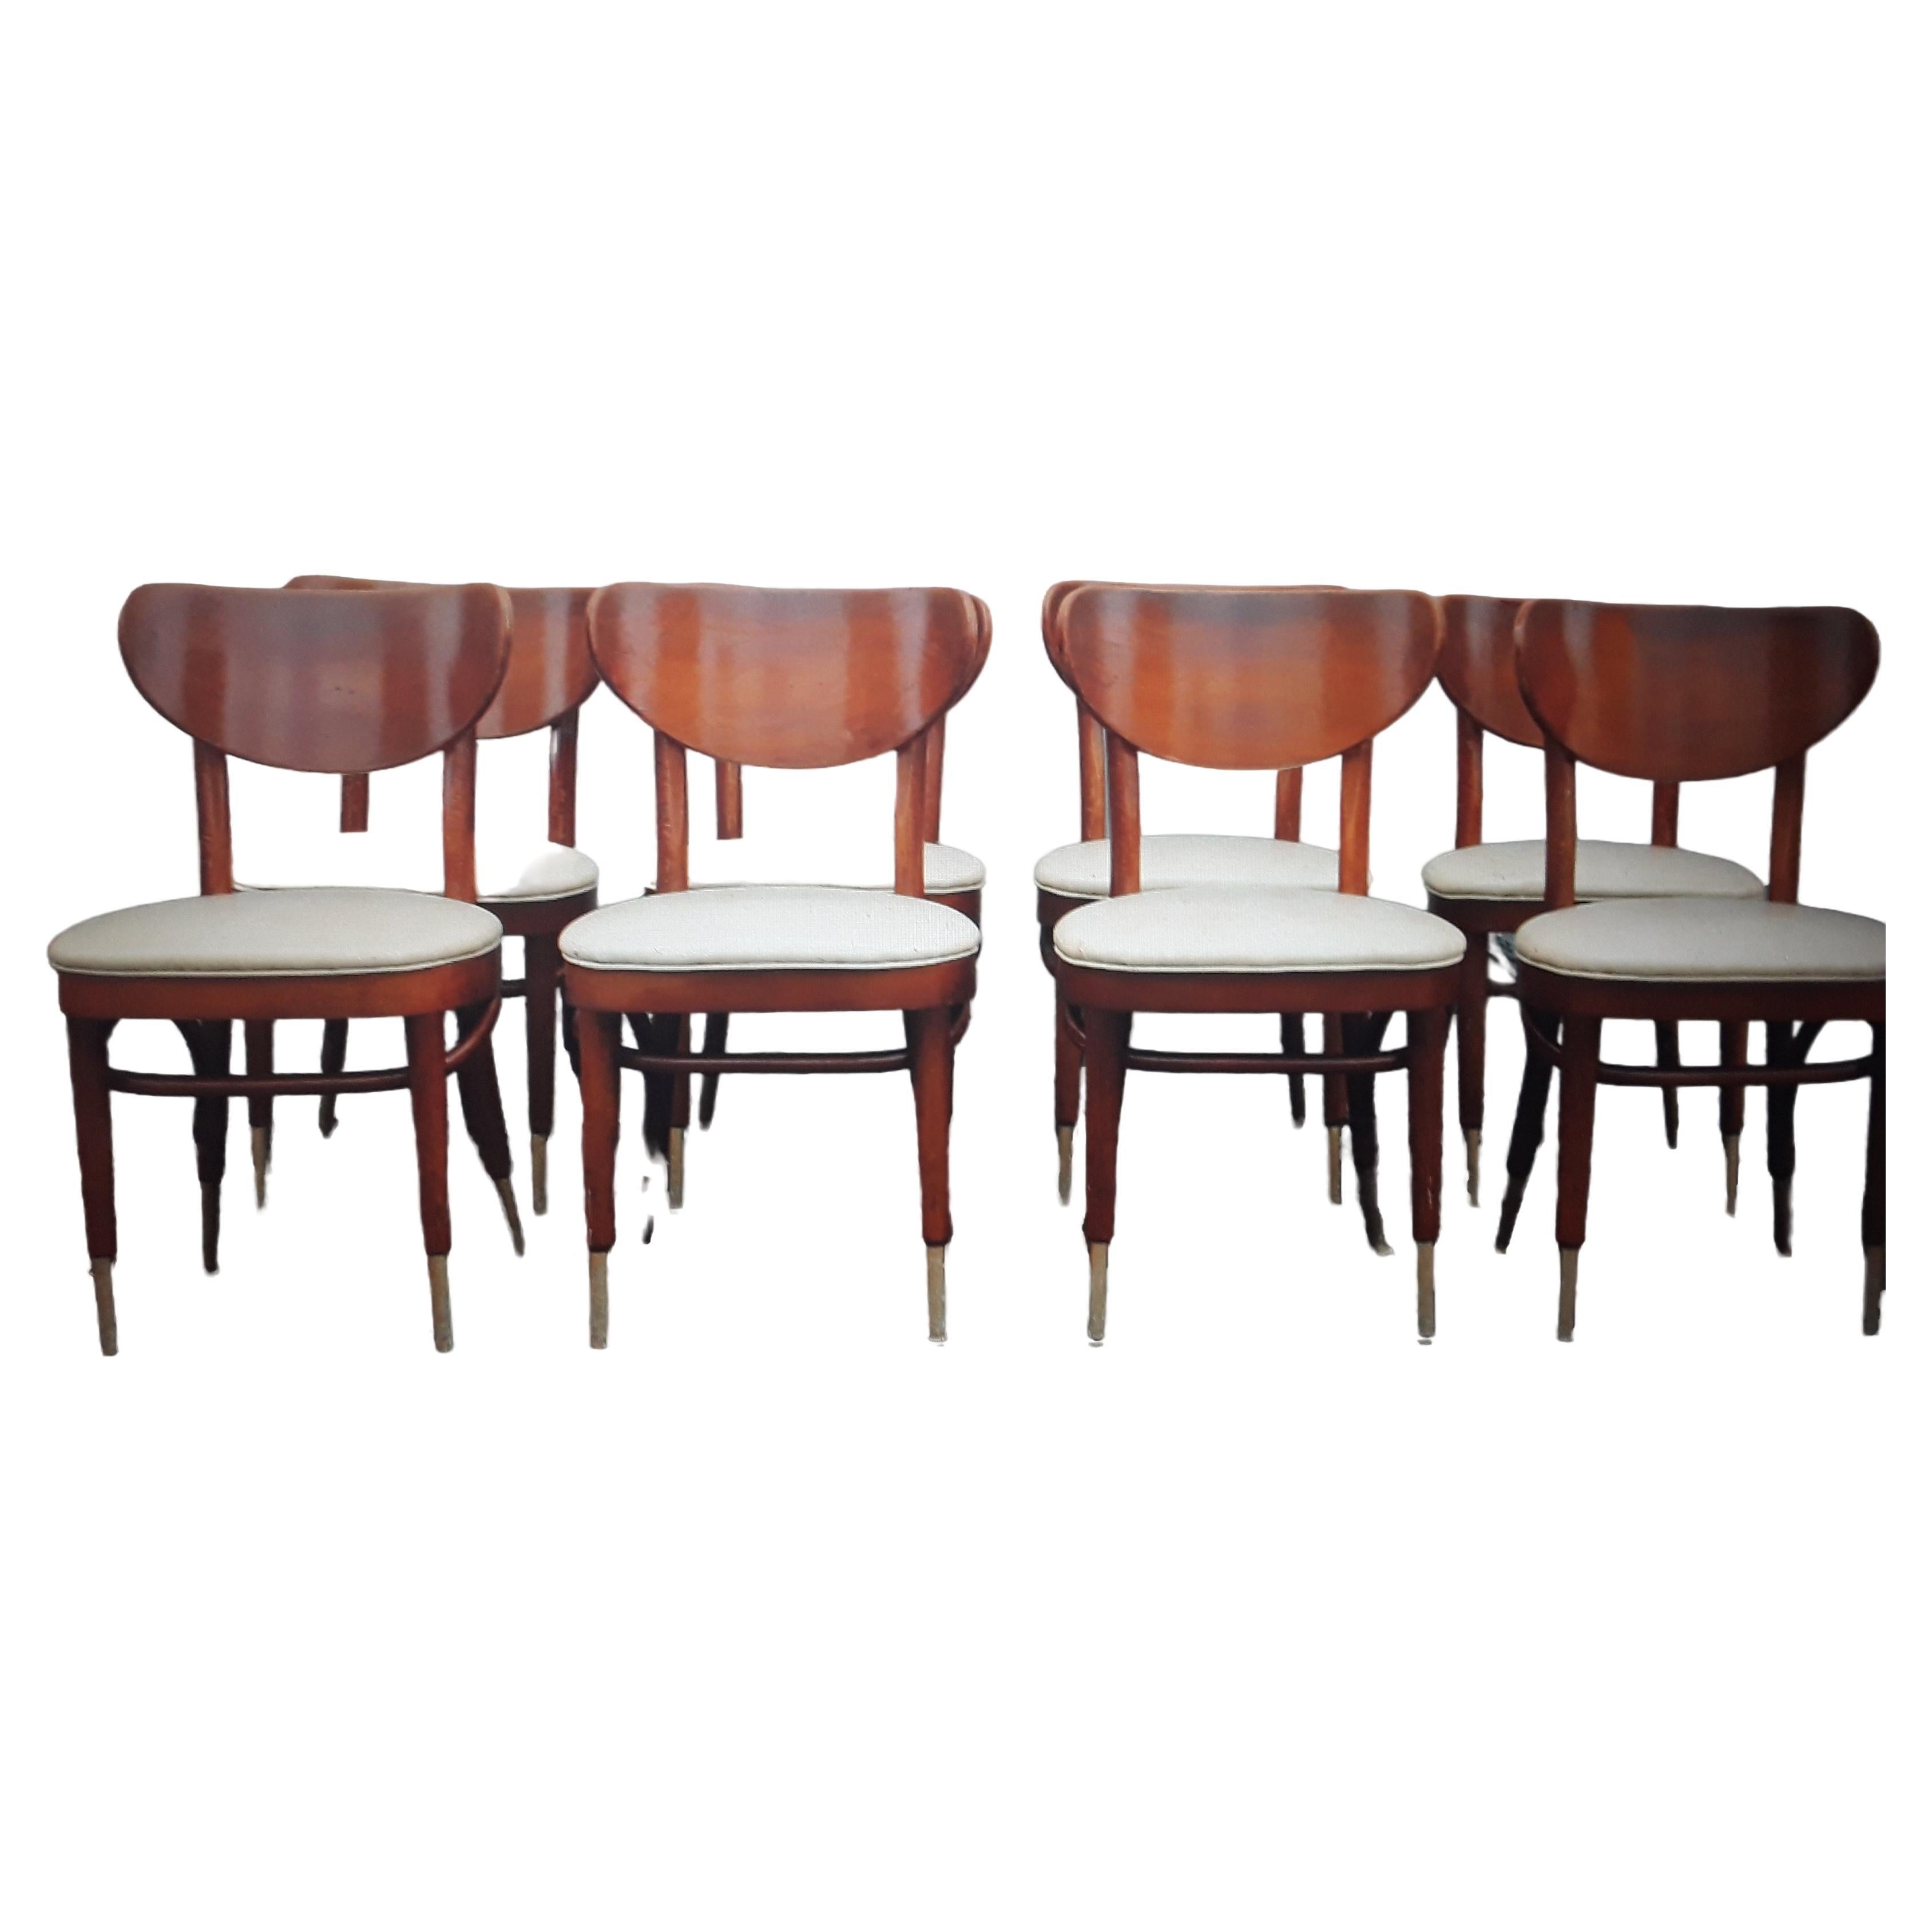 6 Stühle im Stil der Mid Century Modern "George Jetson" Bent Wood Dining Chairs